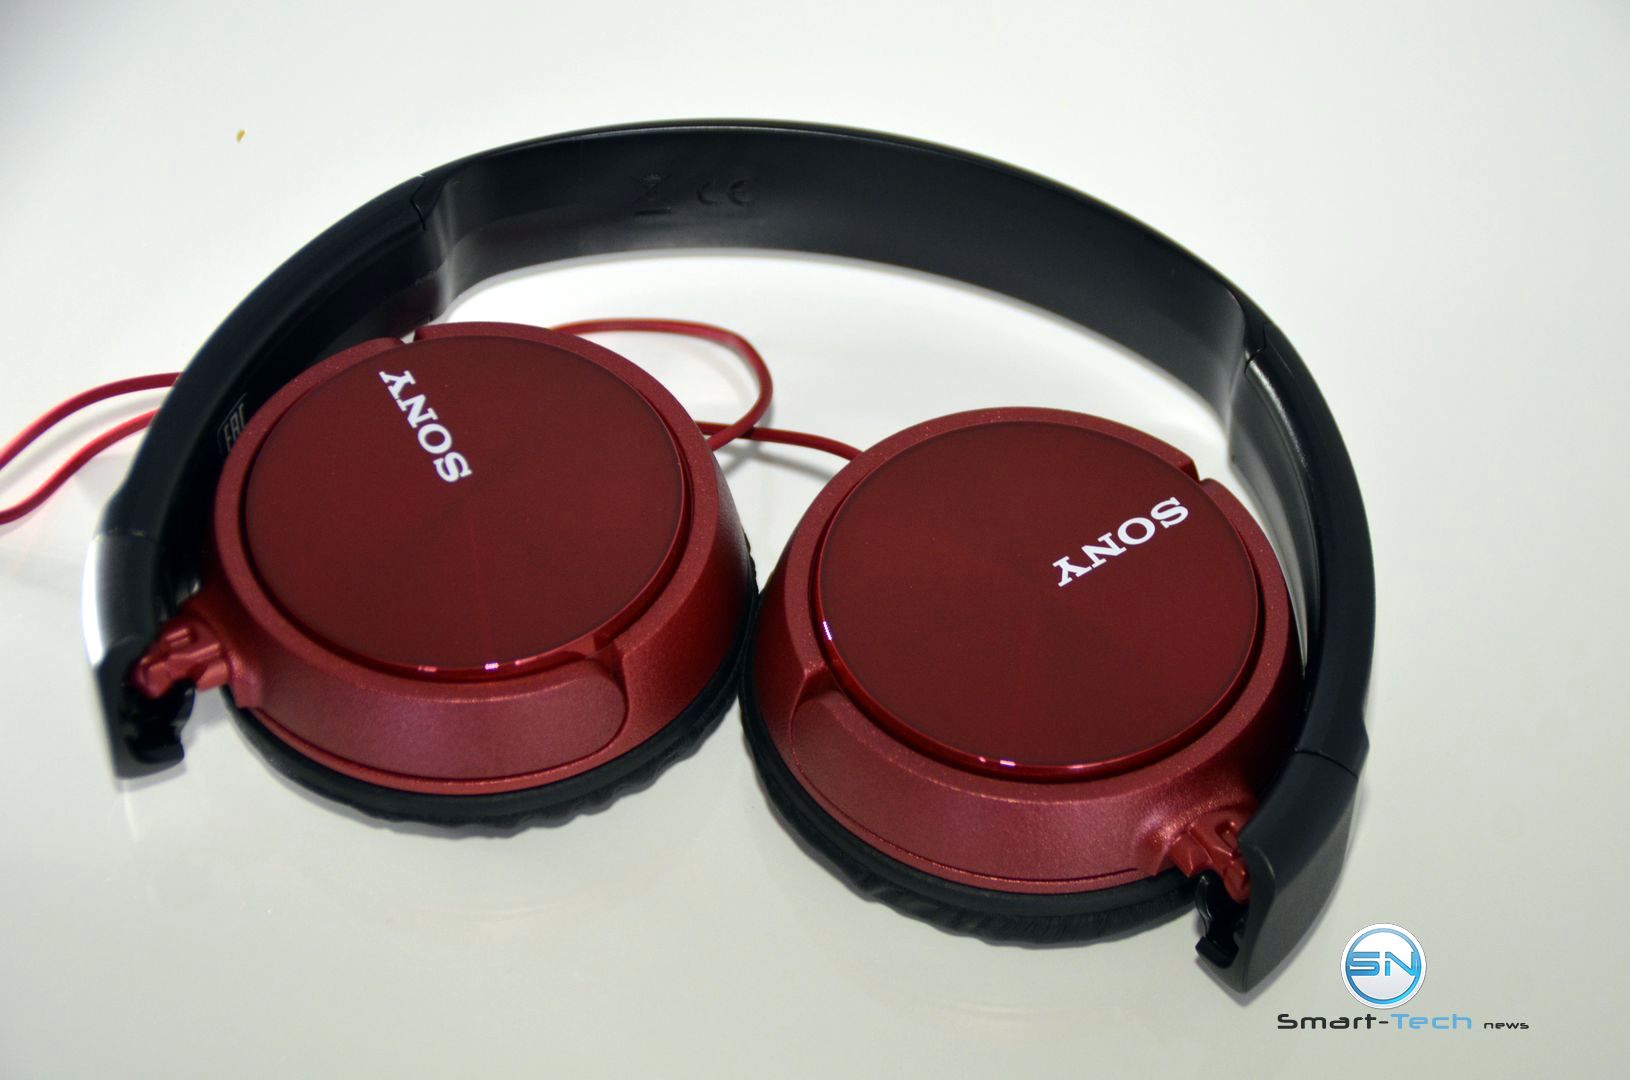 ZX Sony Klang 310 Großer Tech - News - MDR Smart AP zum kleinen Preis